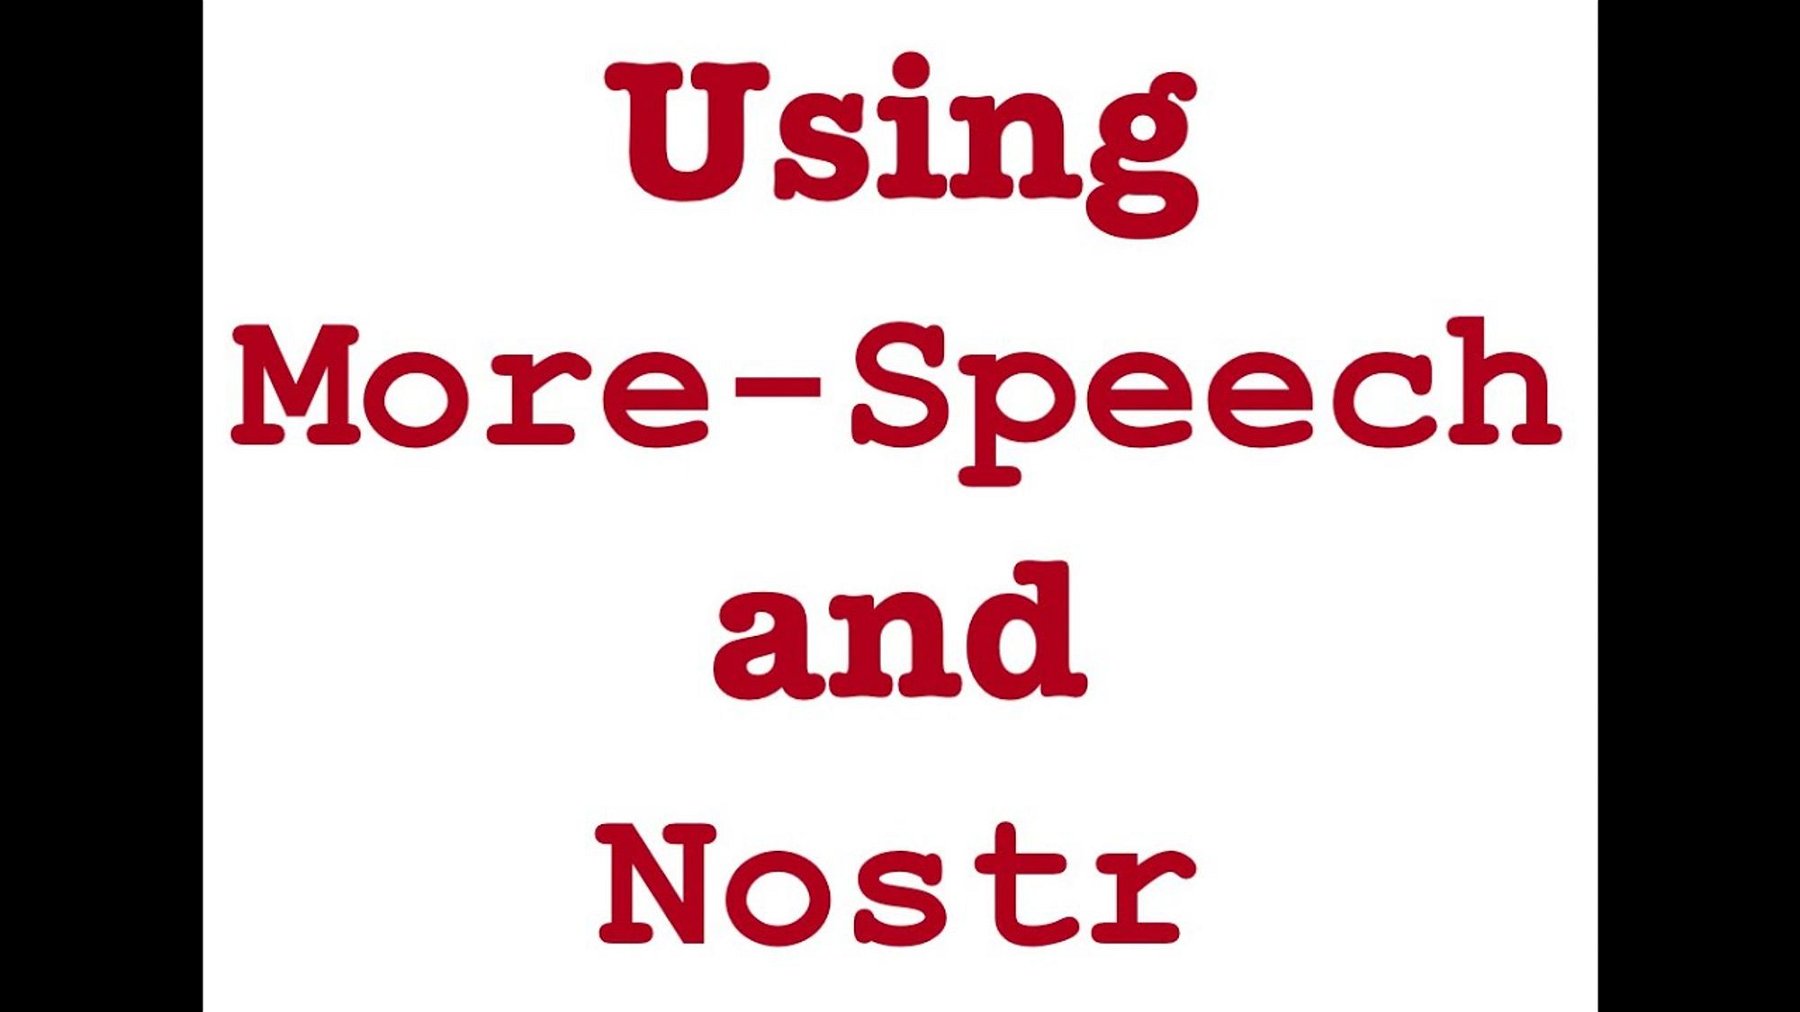 Using more-speech to access Nostr